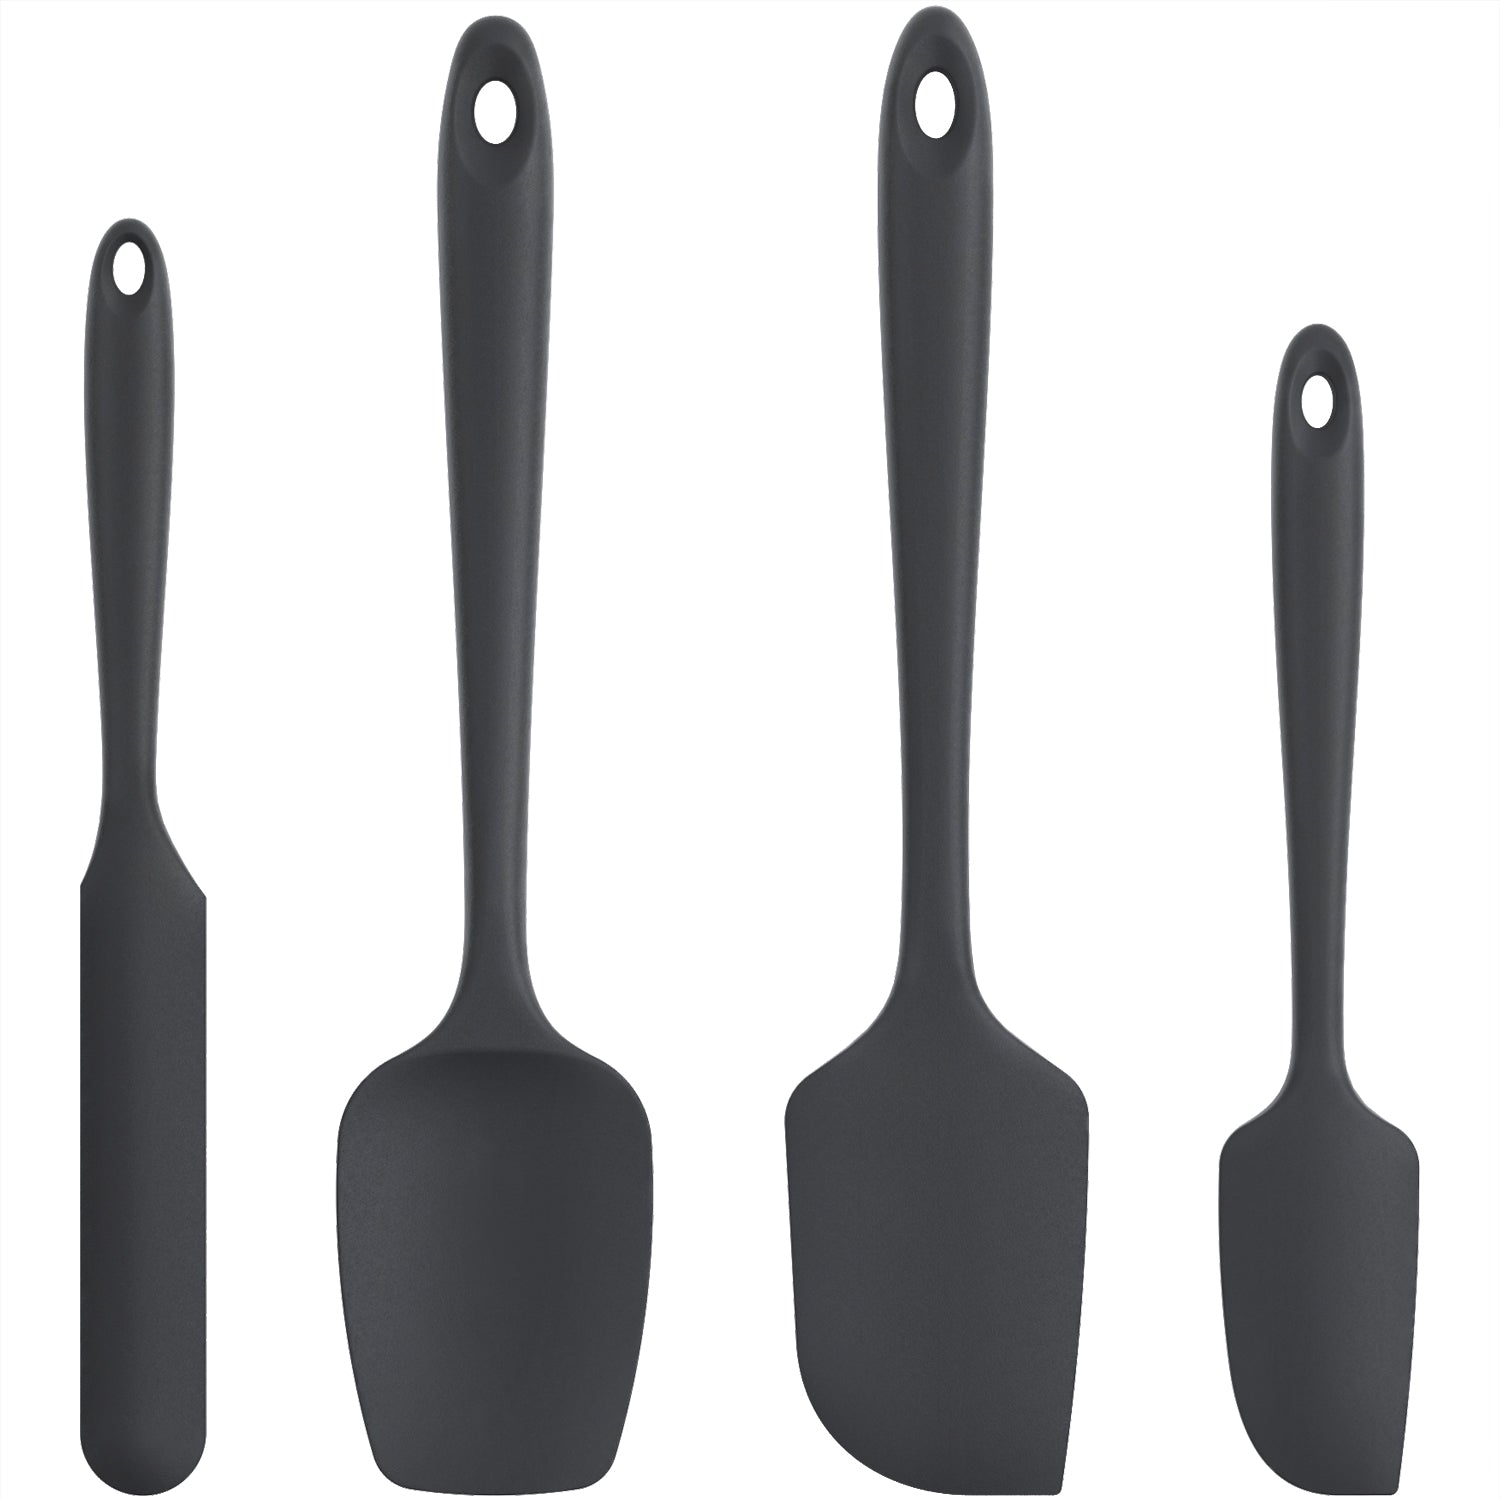 https://www.momjunction.com/wp-content/uploads/product-images/u-taste-premium-spatula-set_afl441.jpg